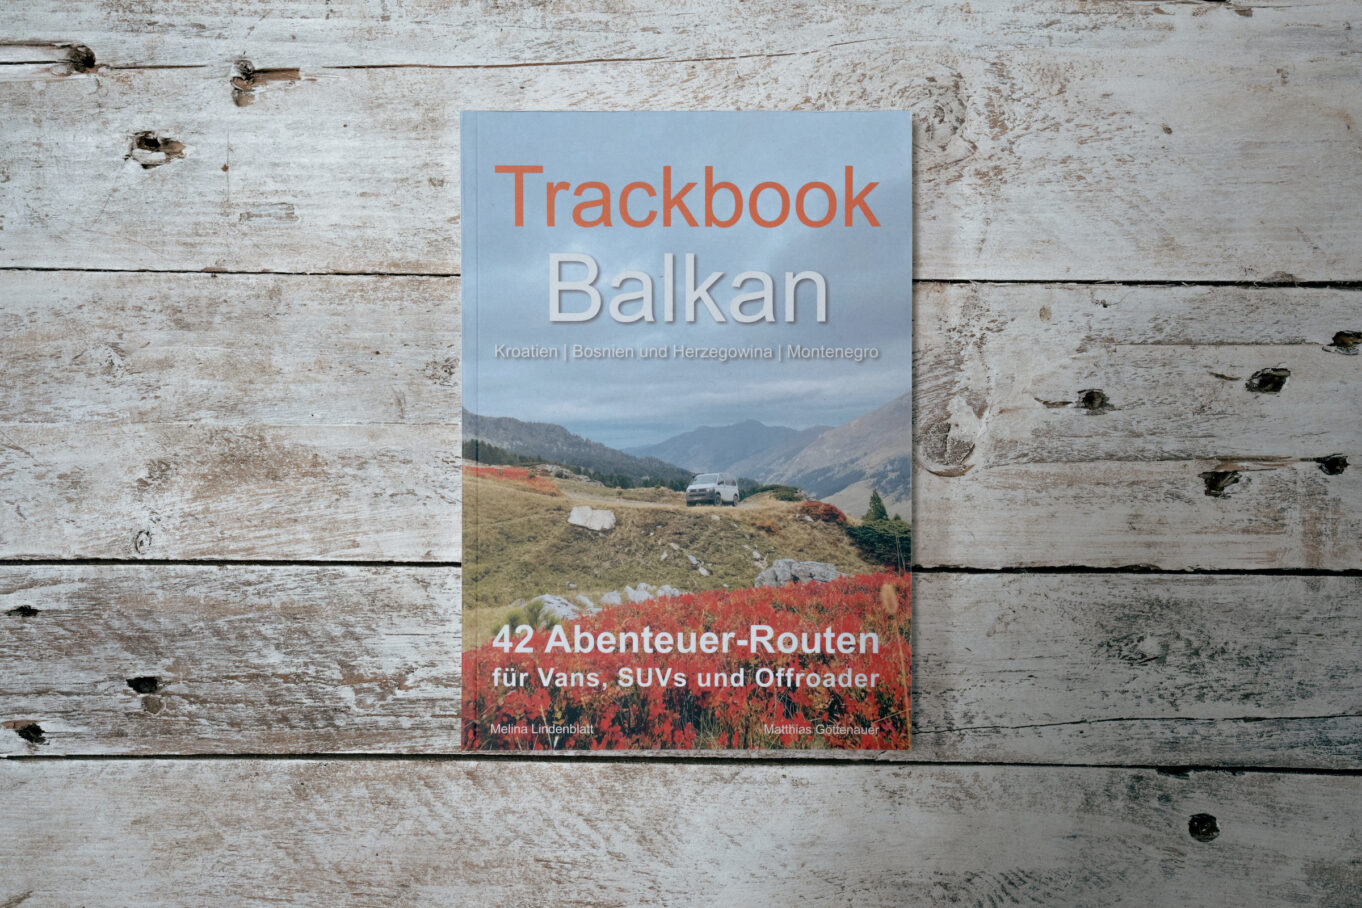 Trackbook Balkan 42 Abenteuer-Routen für Vans, SUVs und Offroader